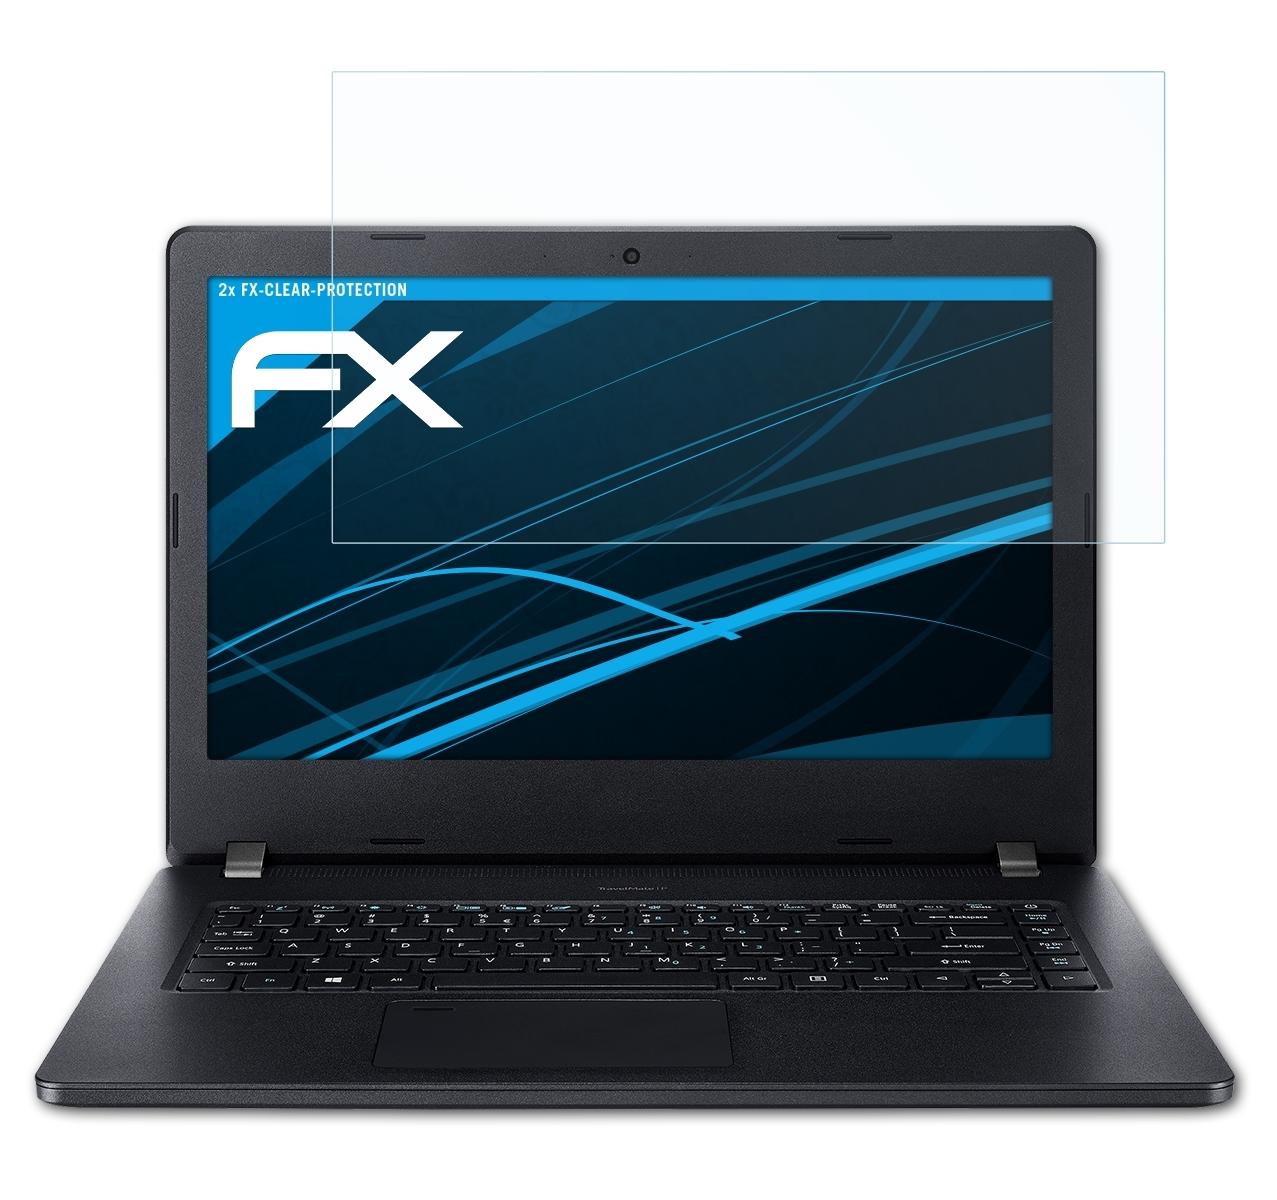 ATFOLIX 2x Displayschutz(für P2 FX-Clear Acer TravelMate (P214-52))